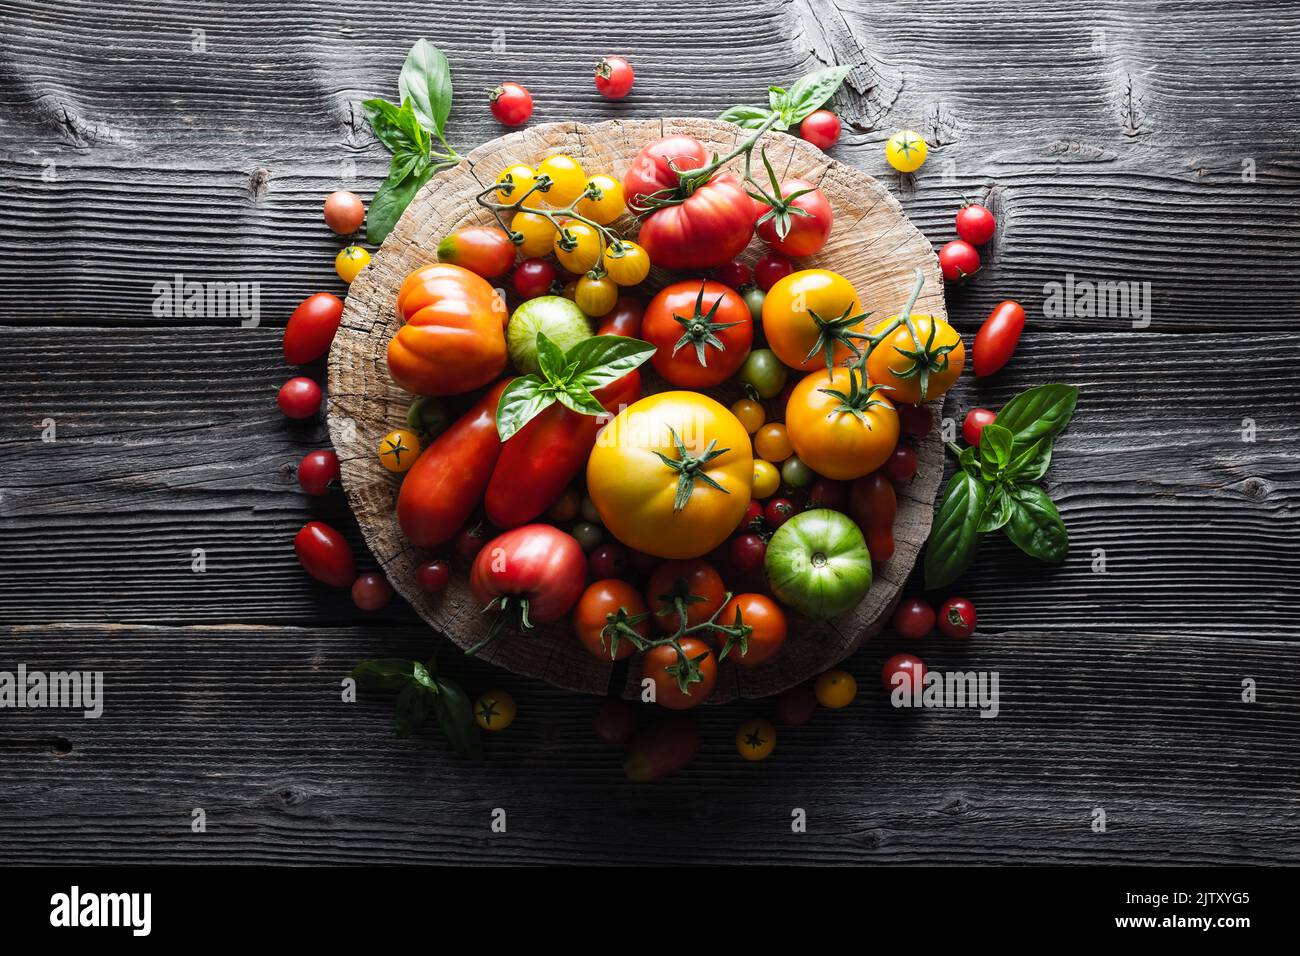 Différentes variétés genre de mélange de tomates rouges, jaunes, vertes et noires sur table en bois. Fond de tomates d'été colorées et fraîches, gros plan. Photographie alimentaire Banque D'Images